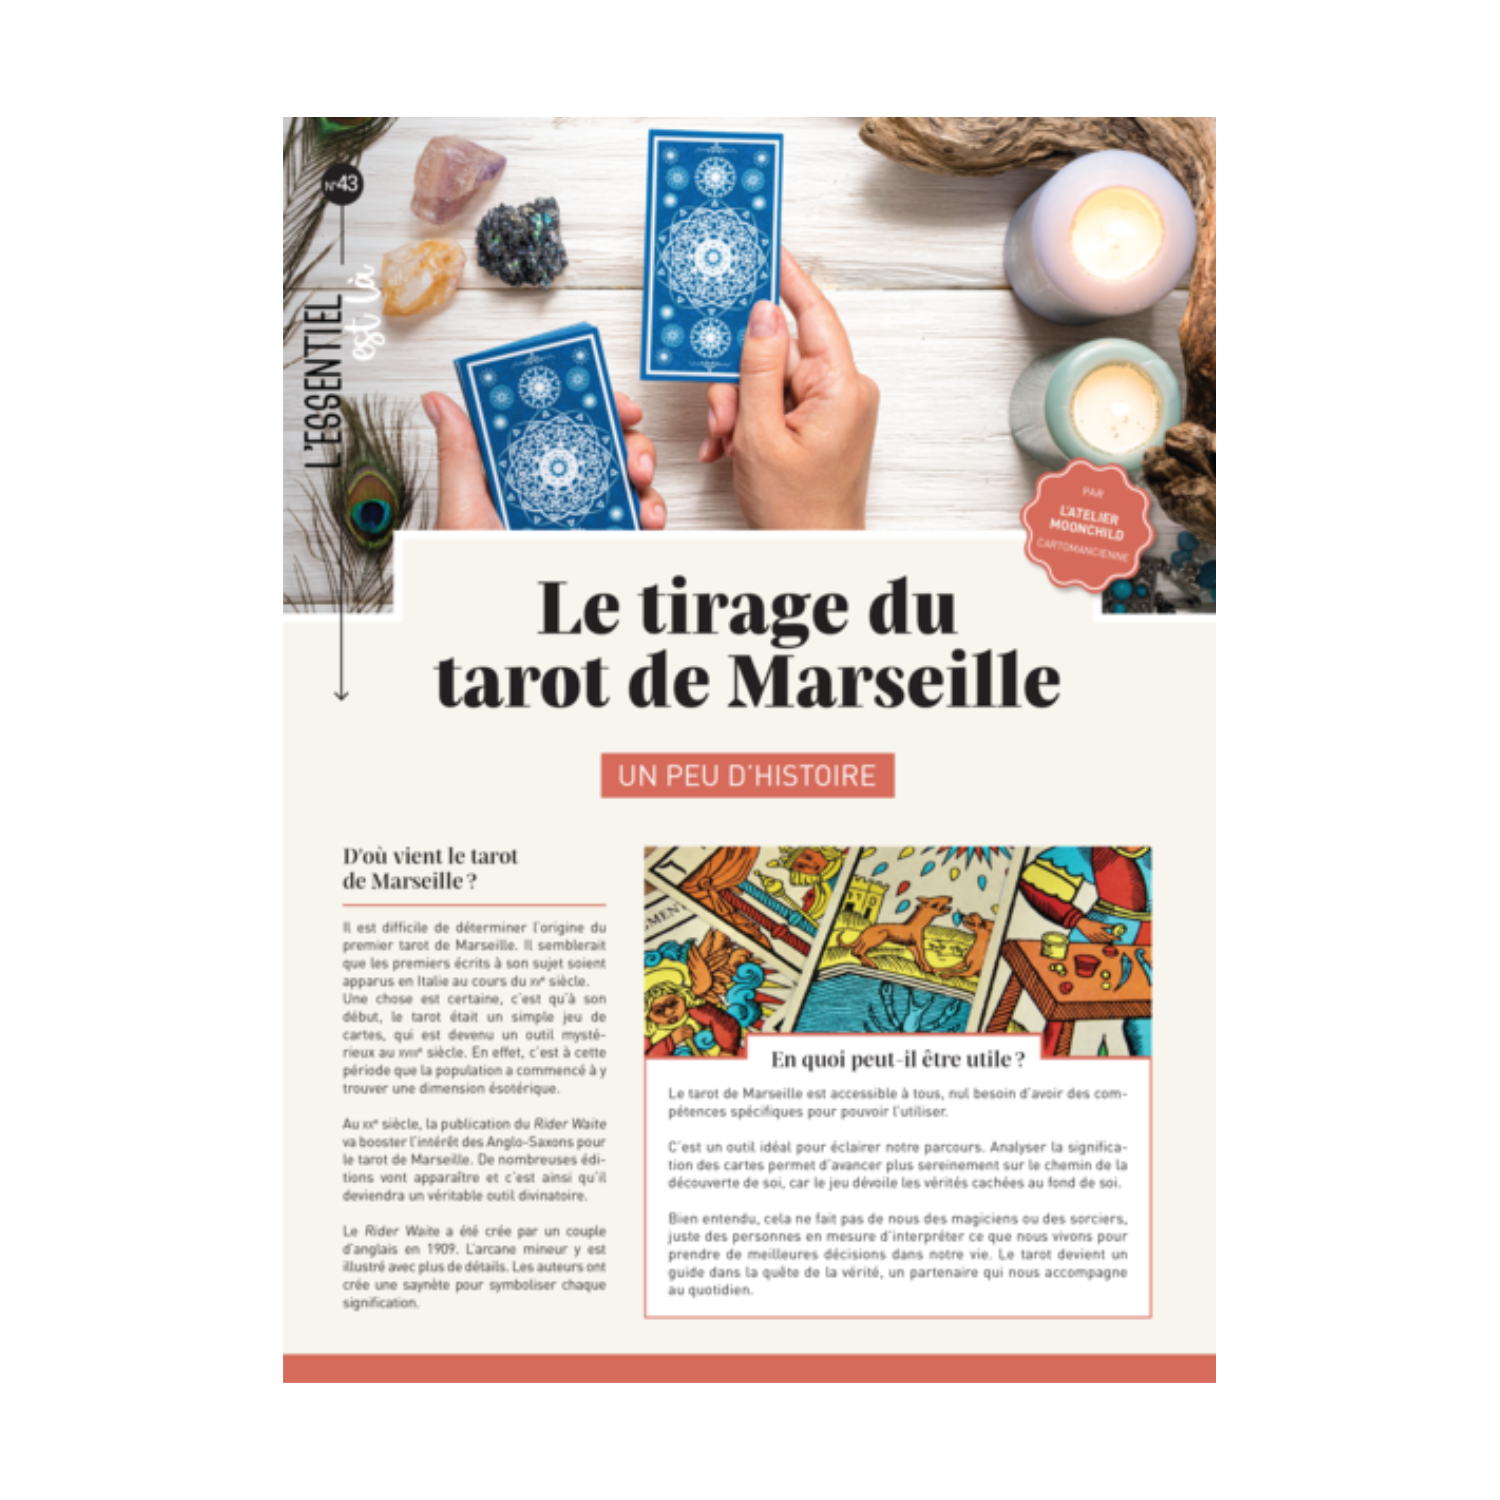 Le tirage du tarot de Marseille - dépliant